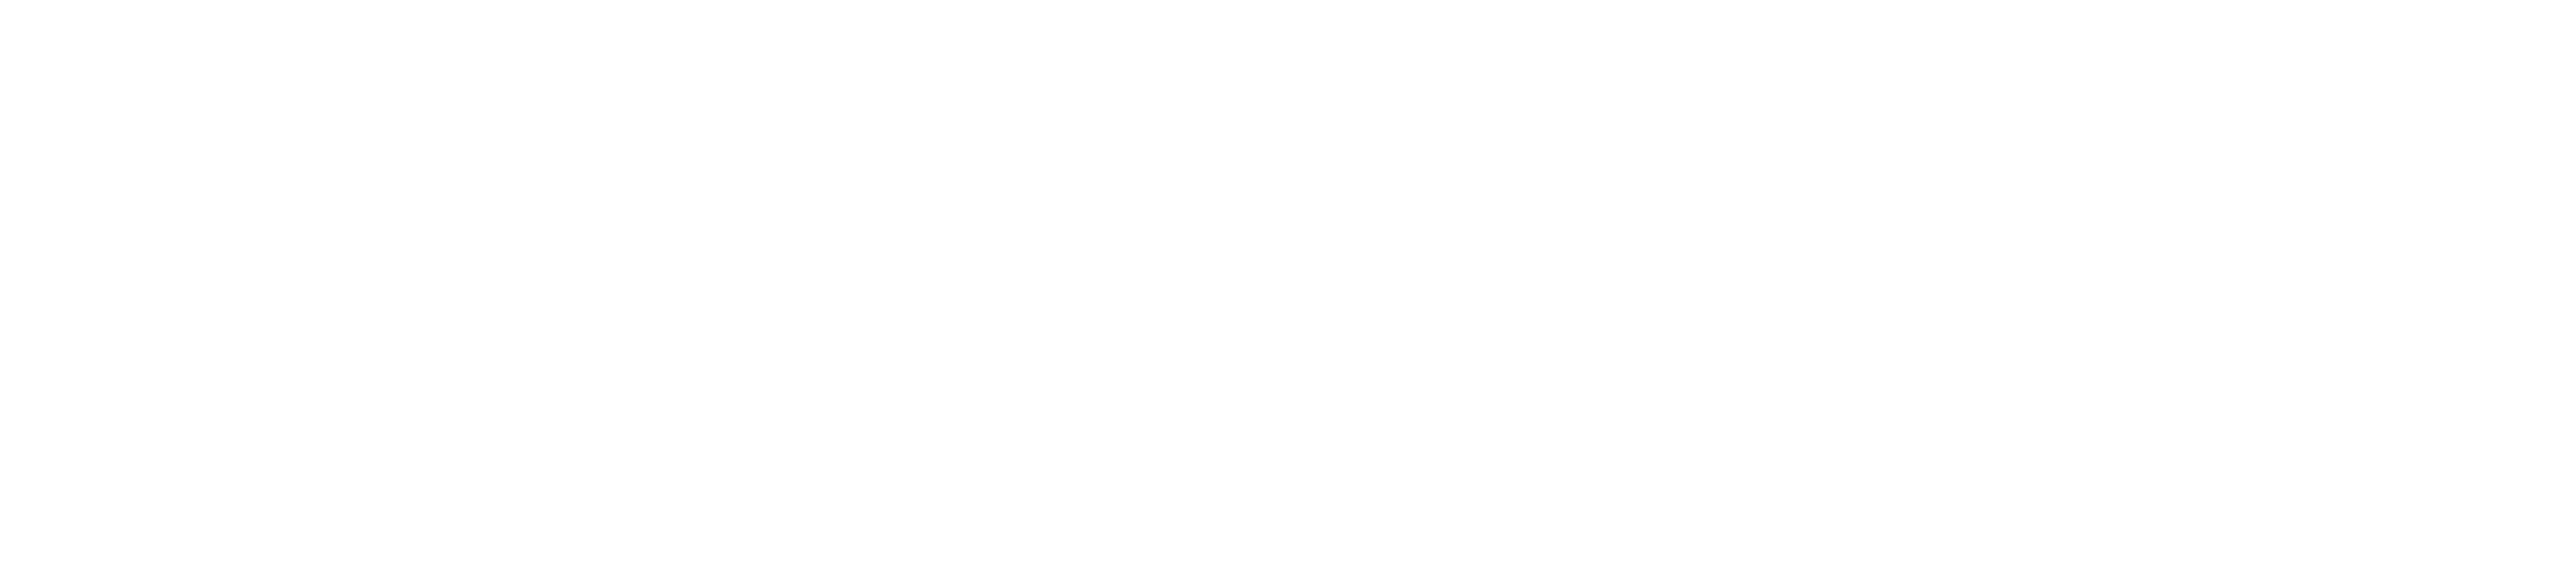 propulsé par la communauté donnant le logo